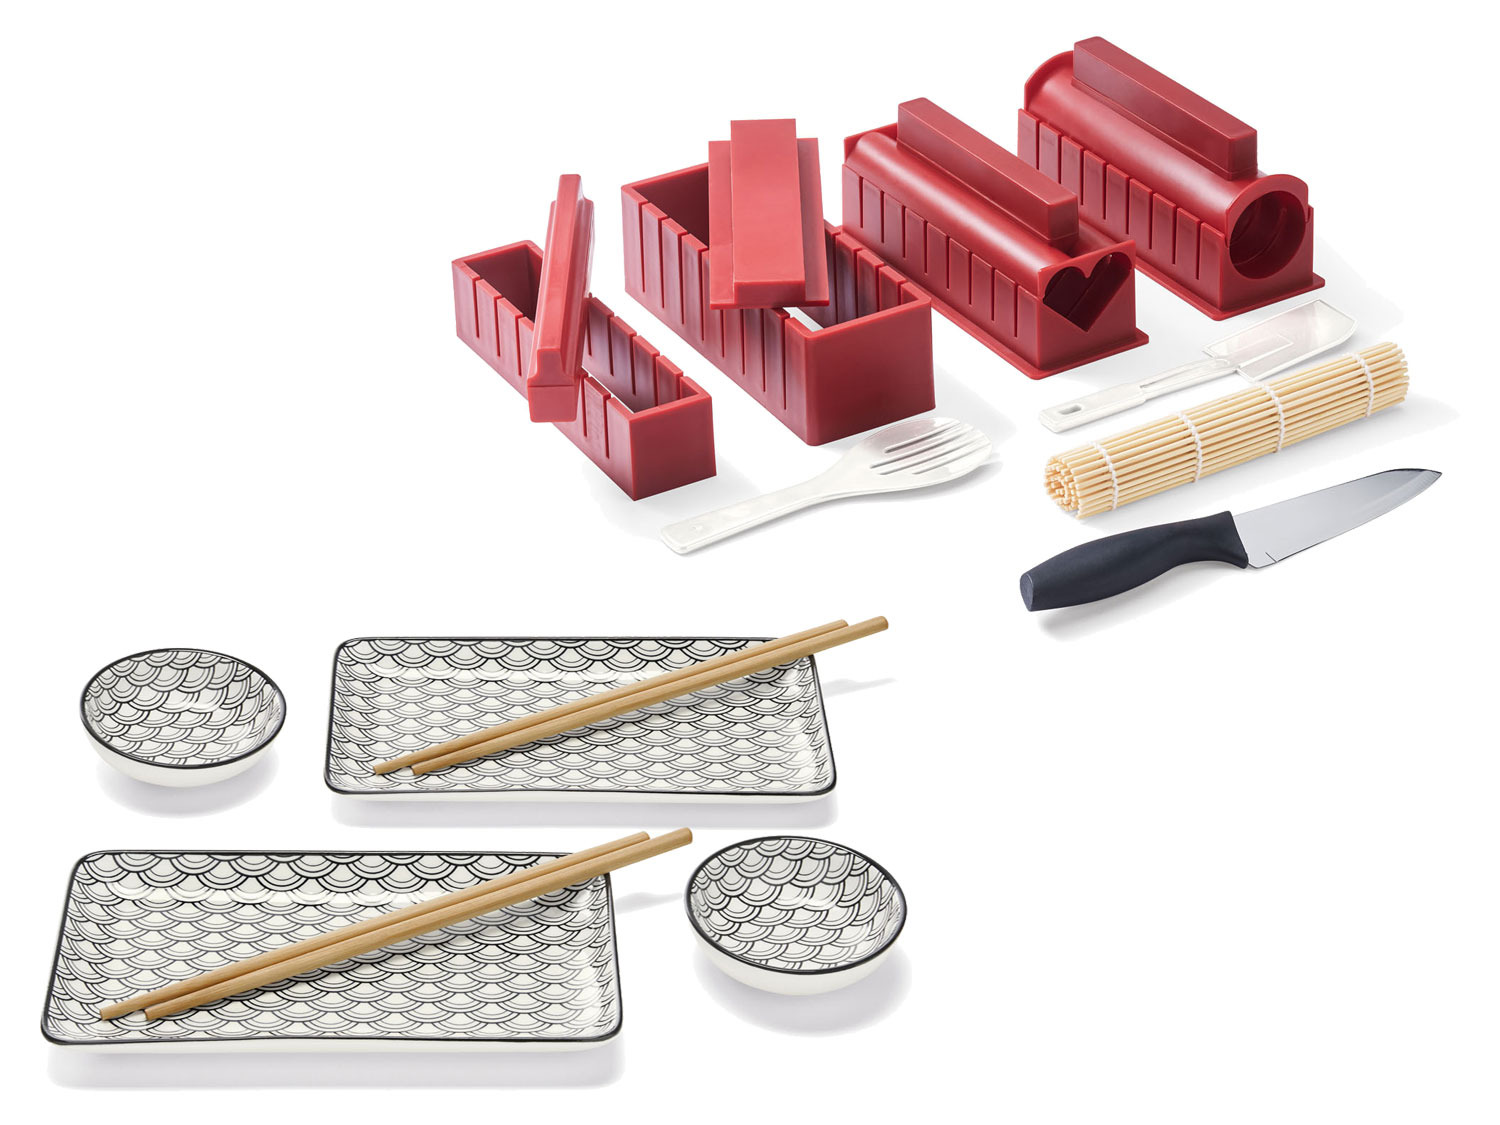 [Weiterhin beliebt] ERNESTO® Sushi Maker Kit + Porzellan | LIDL Sushi-Set